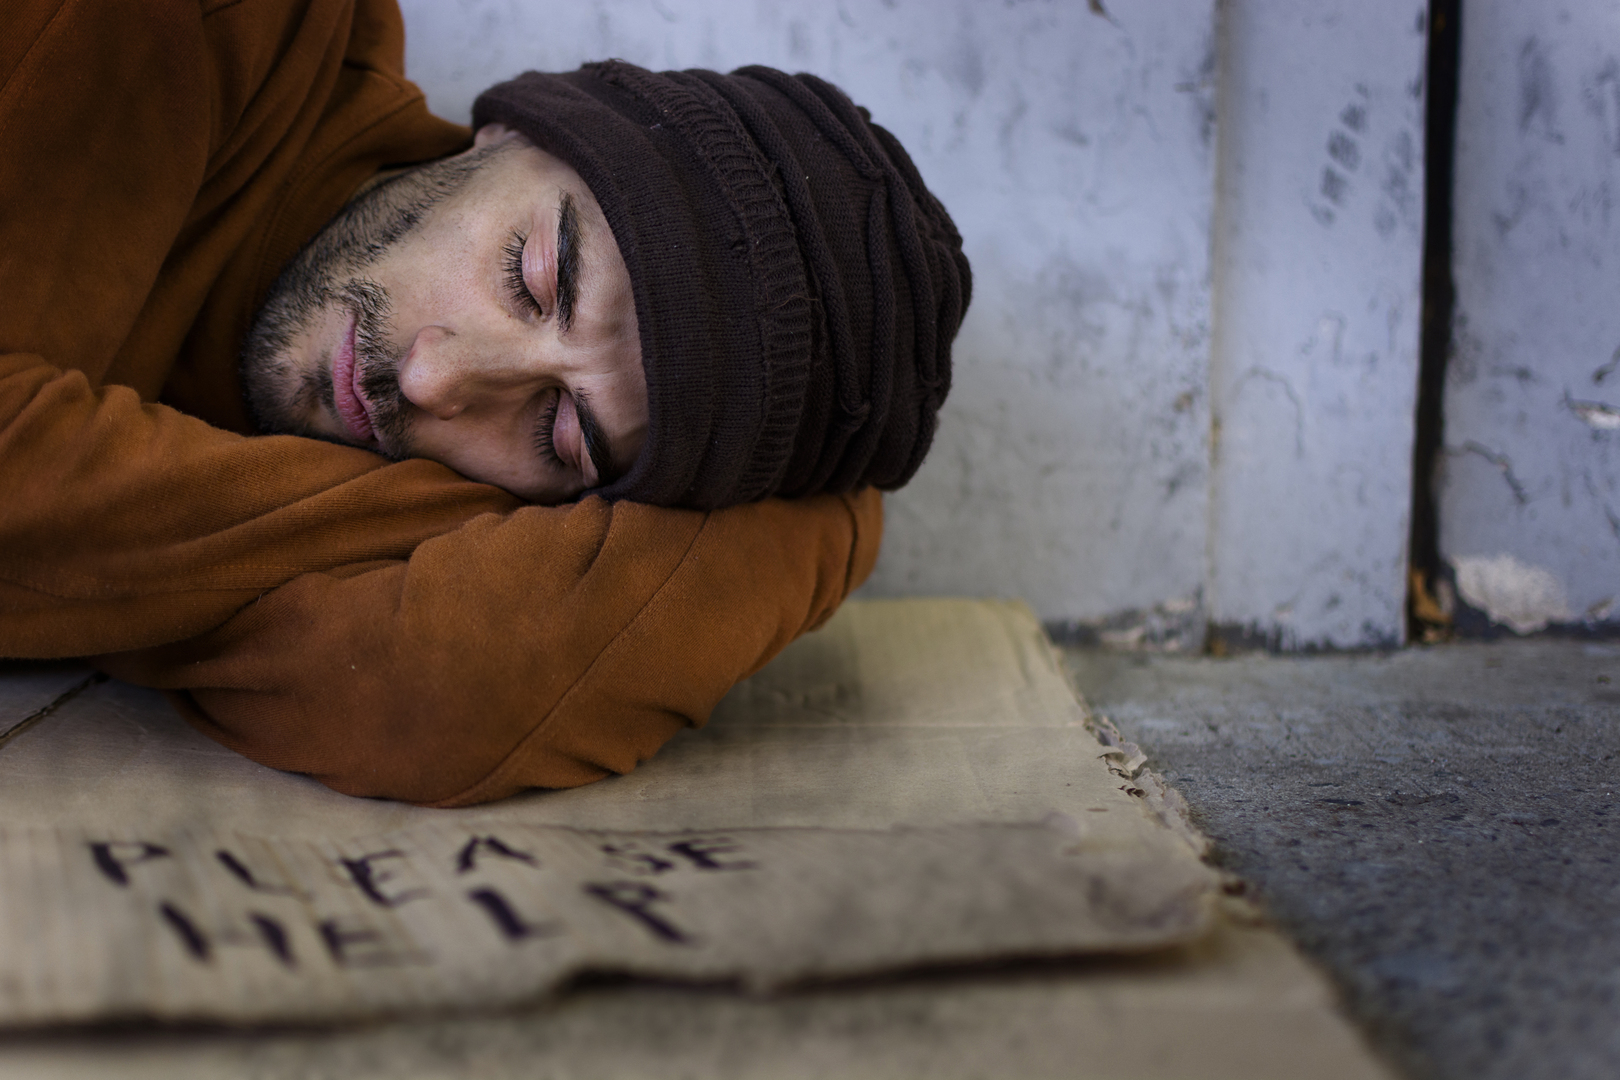 Бедные нечастные. Индии миллионы бездомных людей спят на улице. Faz3 нищее.